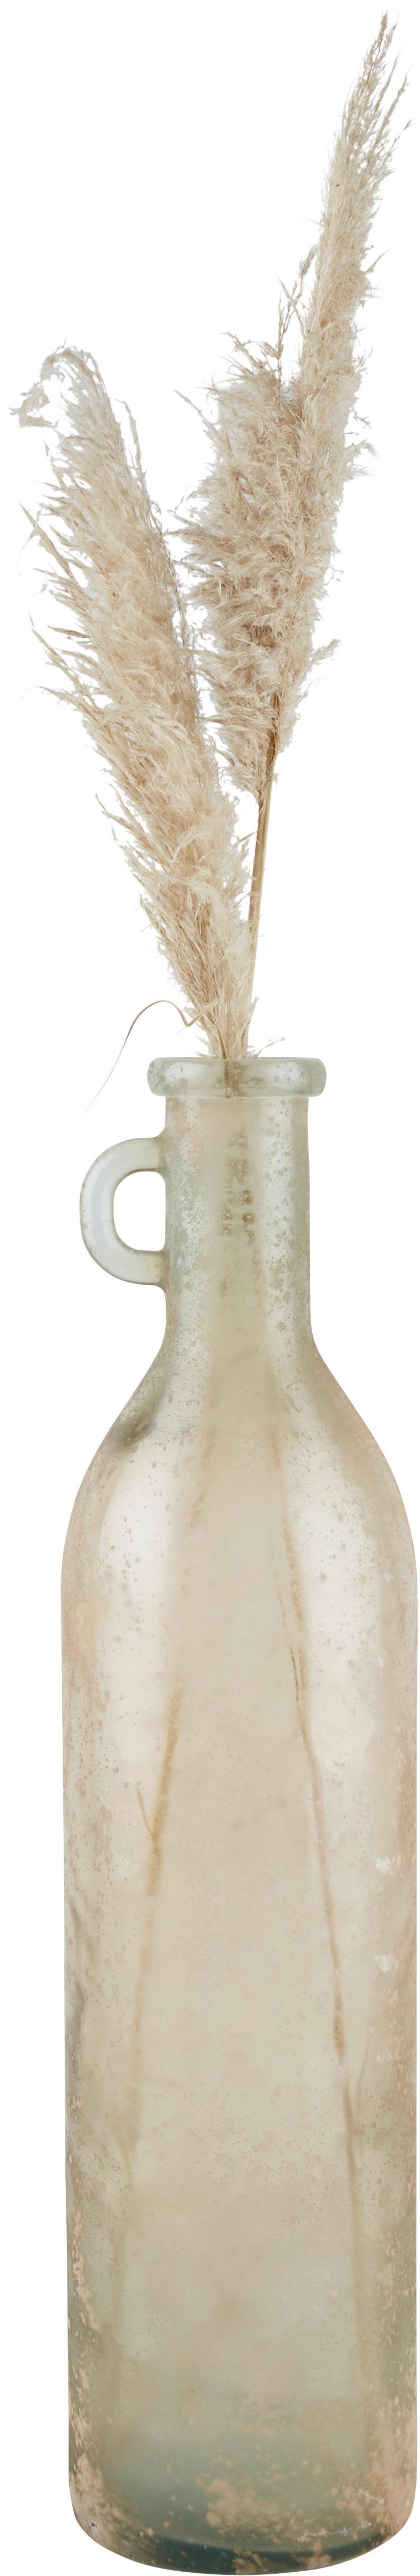 Vaza Botellon - bež, steklo (18/75cm) - Premium Living